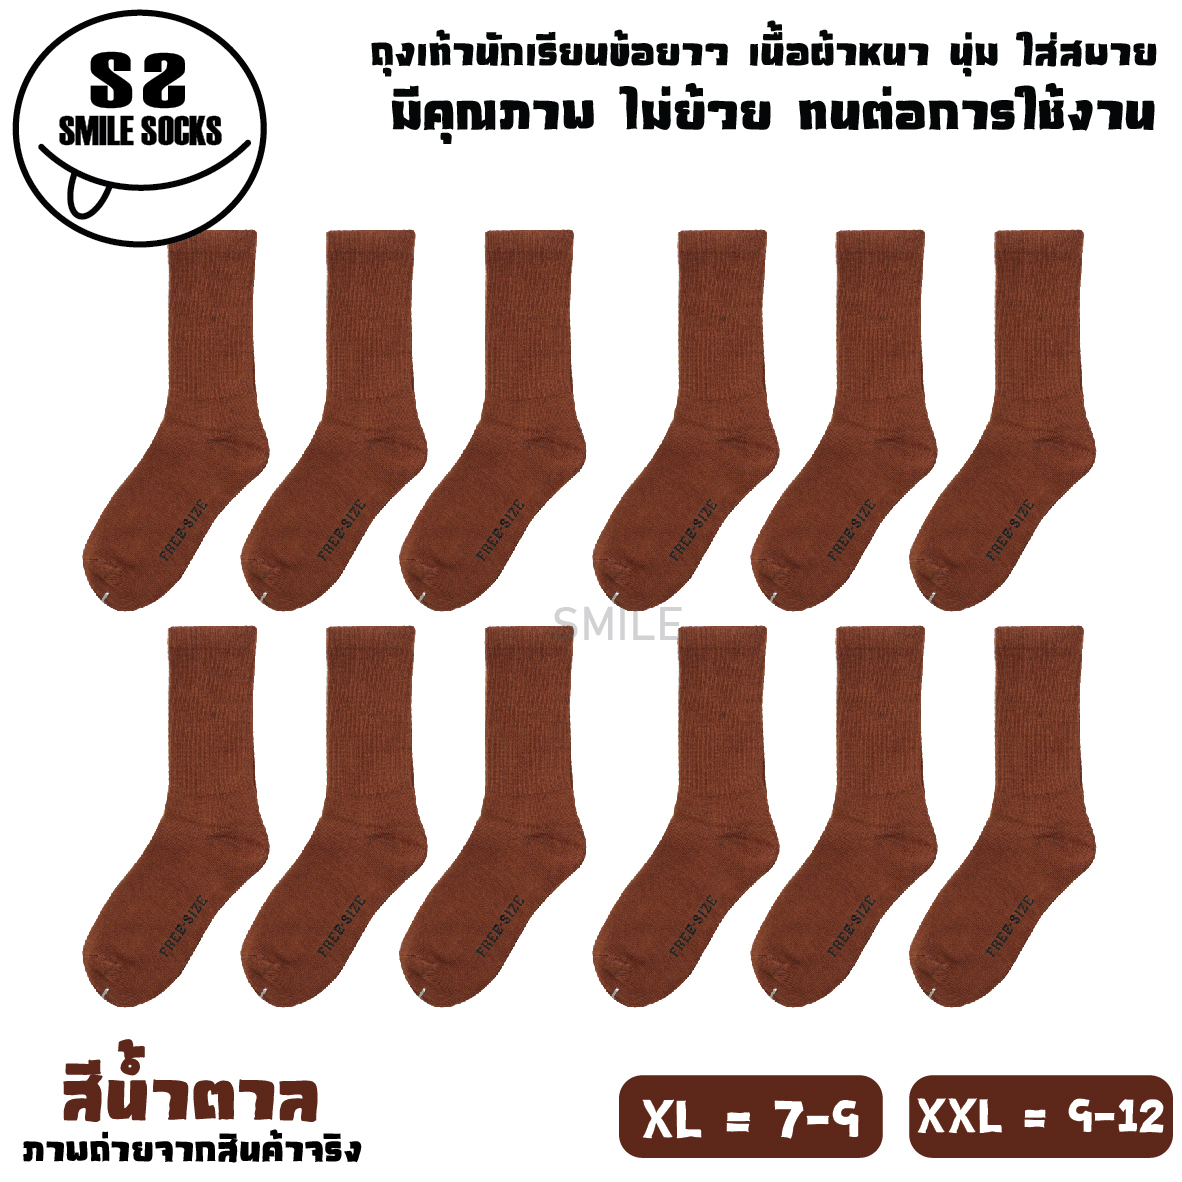 ? ถุงเท้านักเรียนไทย ข้อยาว สีขาวพื้นเทา ⚽ สีน้ำตาล ? เนื้อผ้าหนา ? ไม่ย้วย ? ทน ? ถุงเท้าคุณภาพดี ?